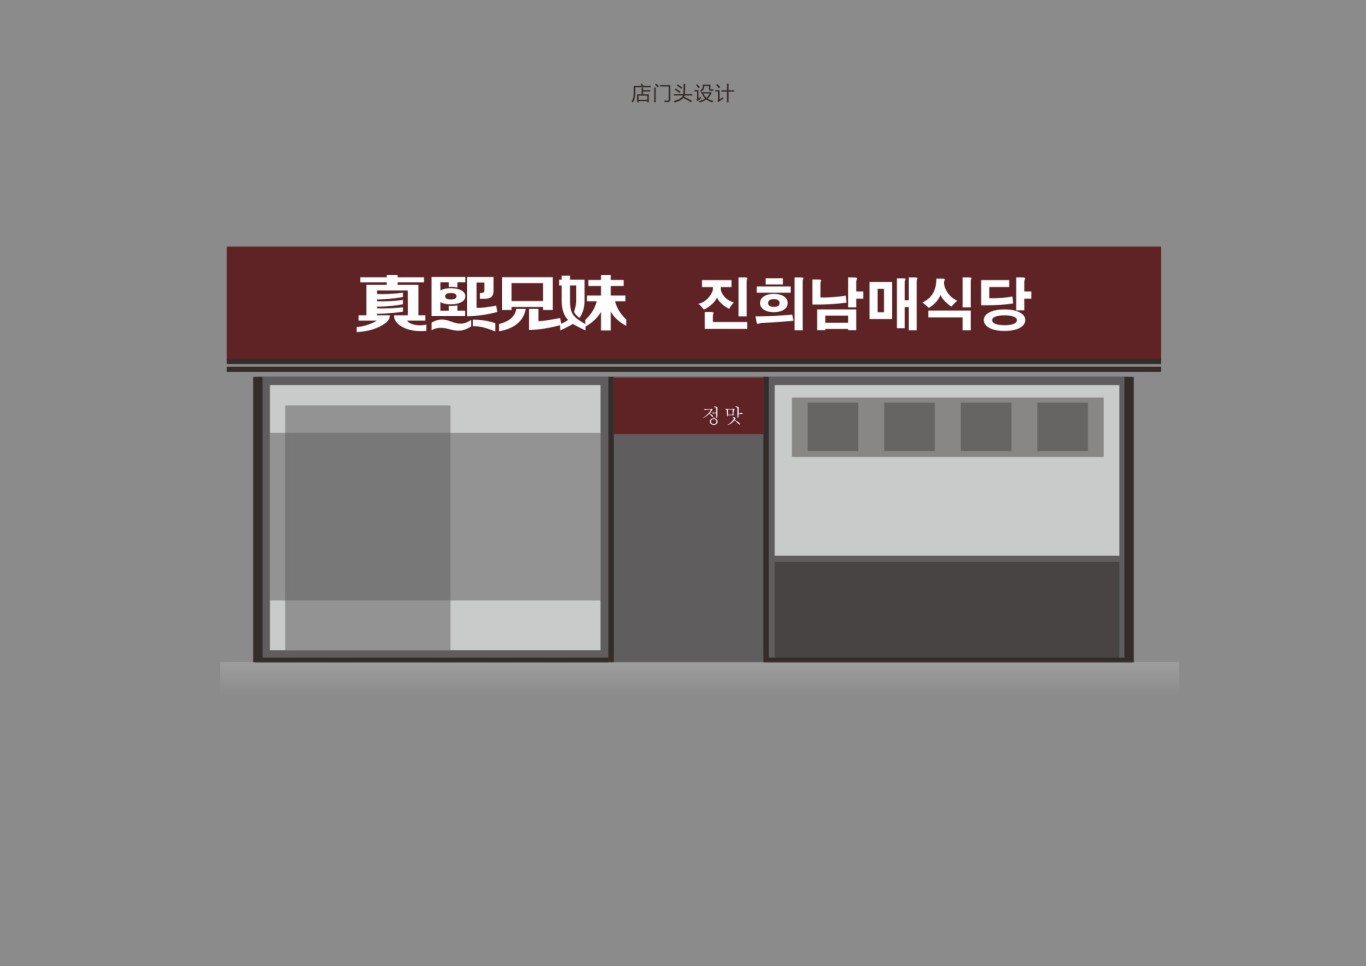 韩式简餐连锁品牌设计图17